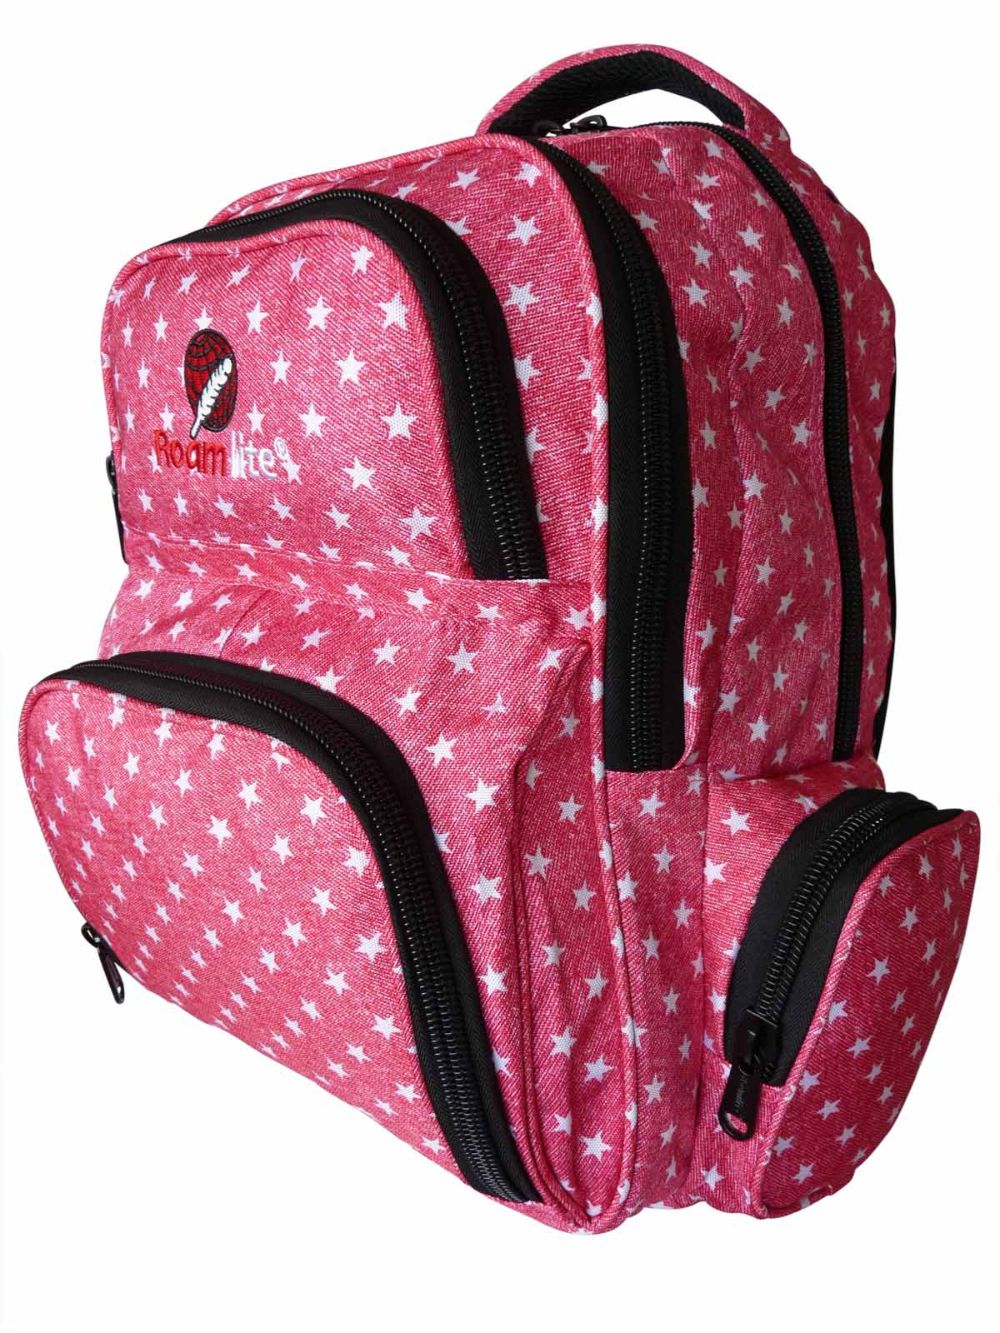 Roamlite Childrens Backpack Pink Star pattern RL840 